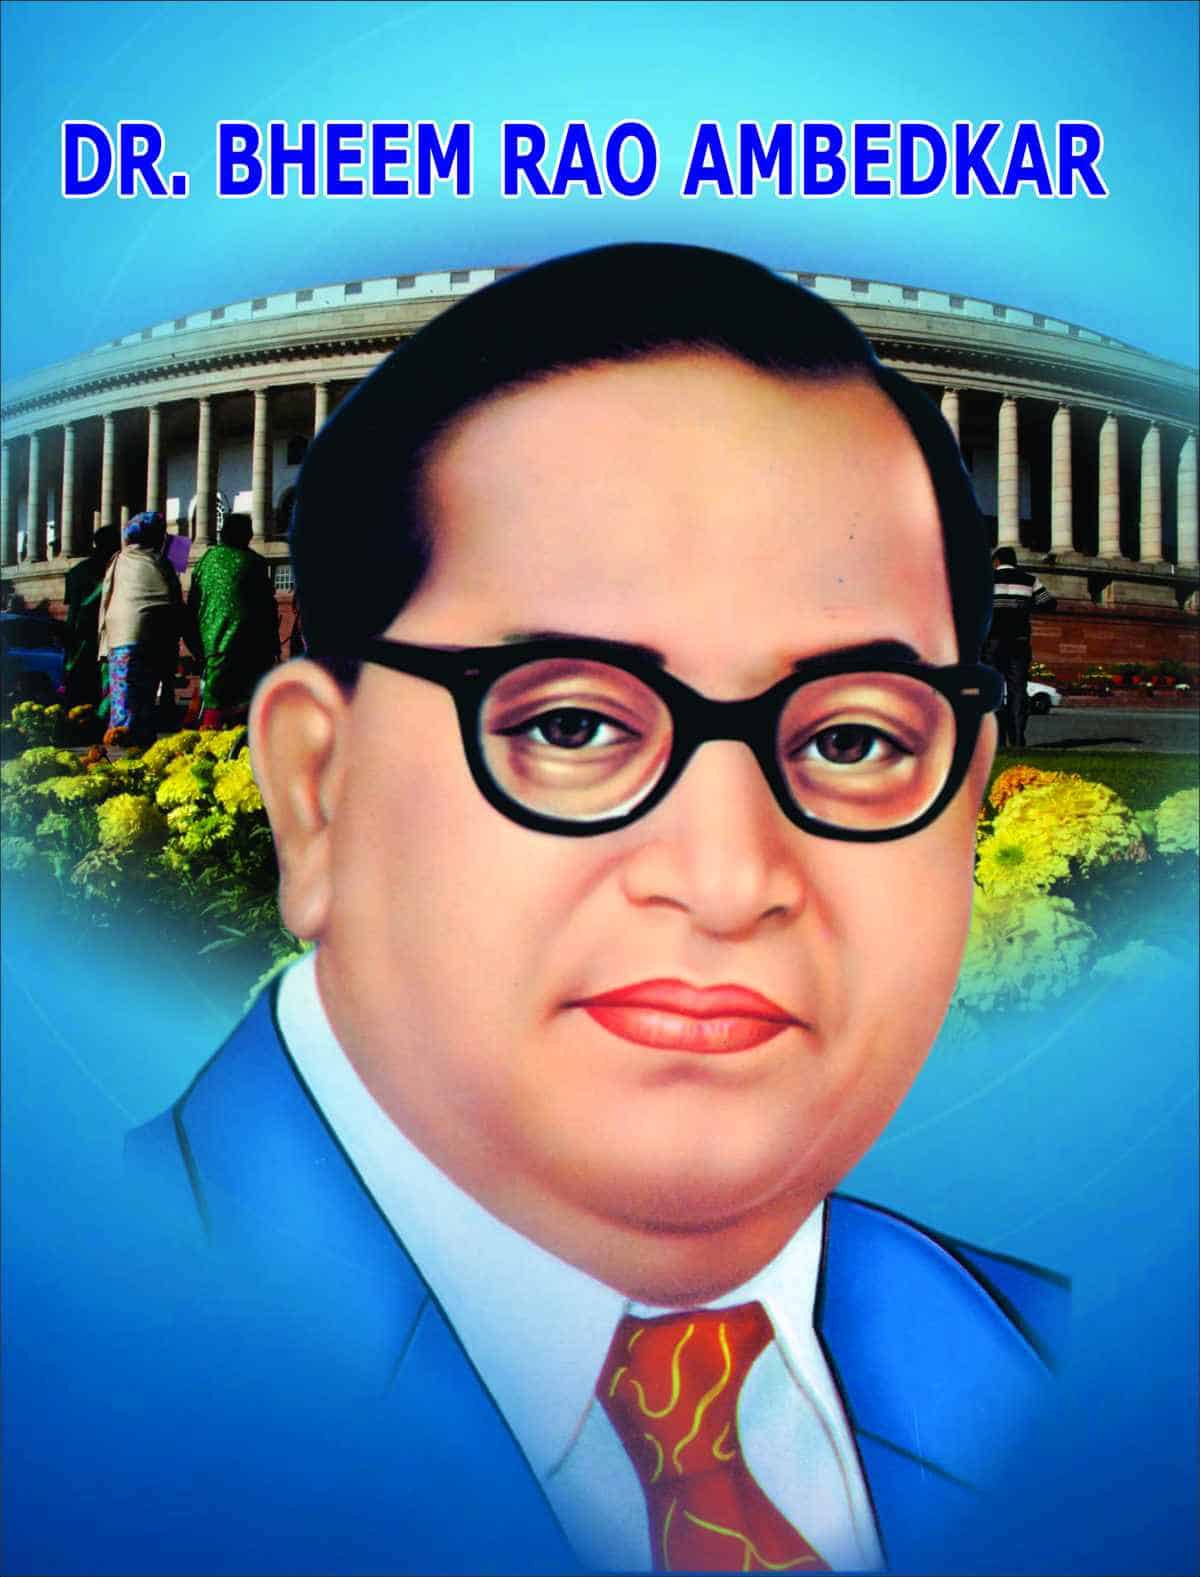 ambedkar biography book pdf